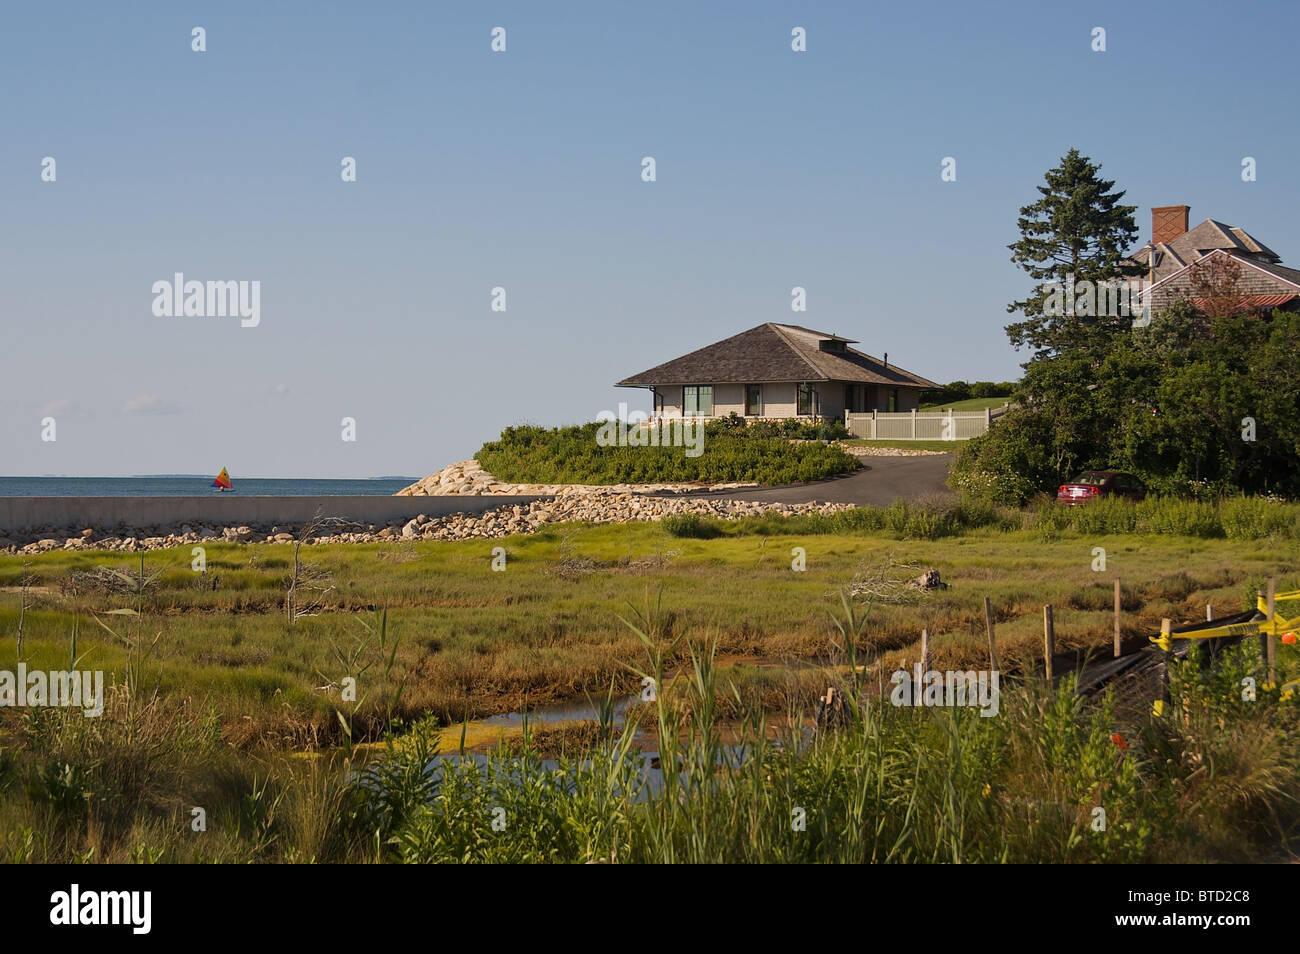 Une maison avec vue sur la mer et des zones humides Banque D'Images